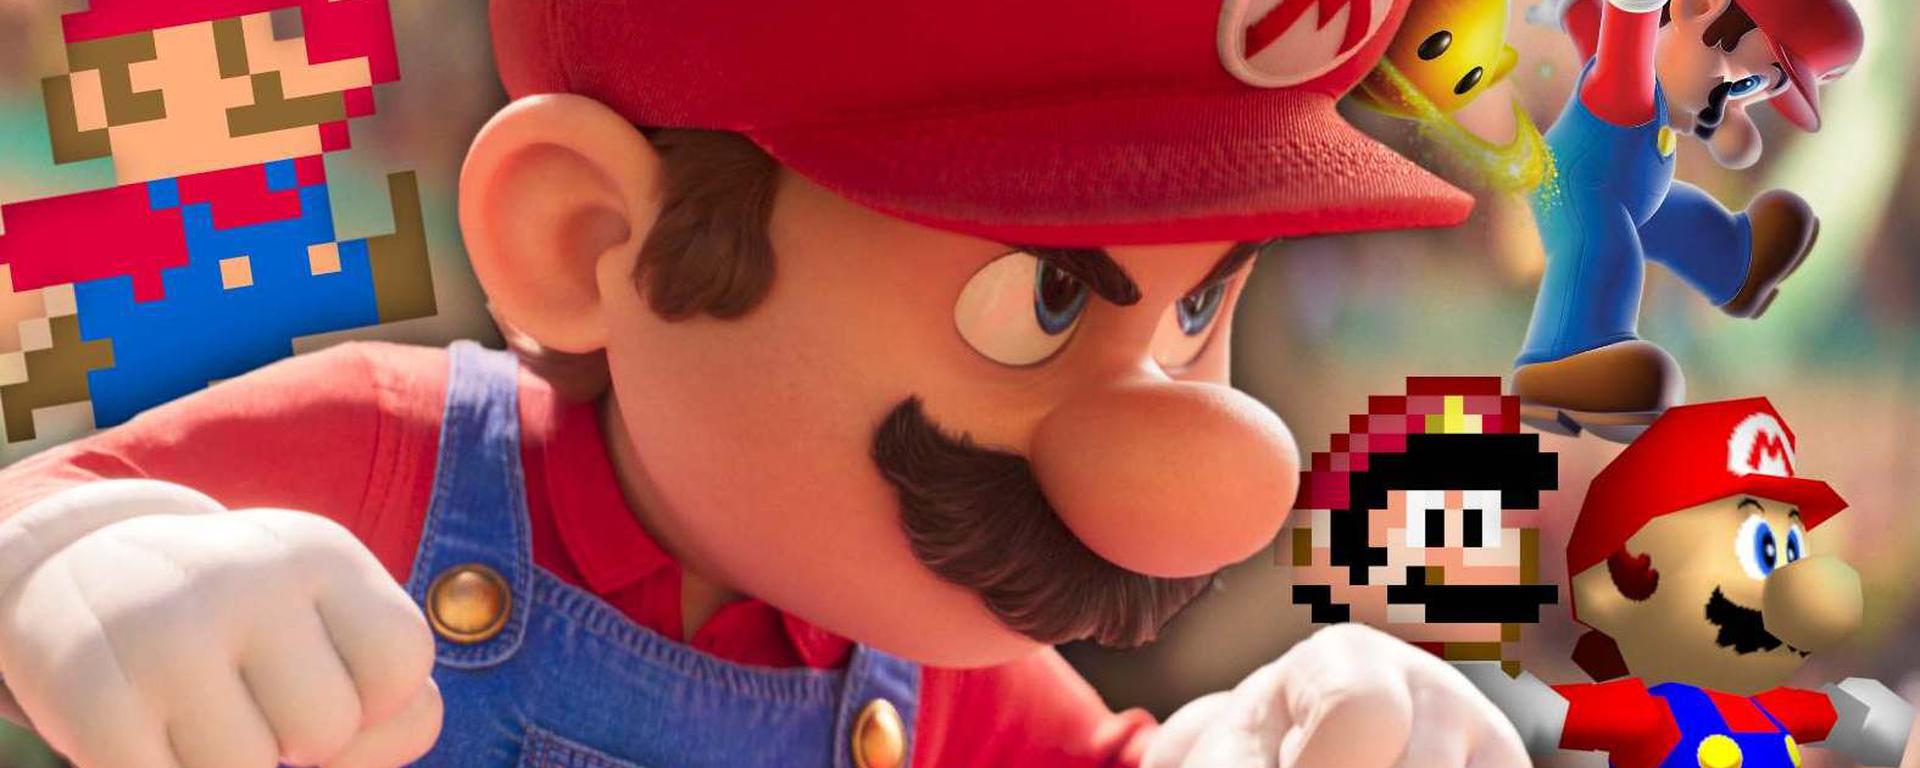 Super Mario Bros.”: Nintendo busca redimirse 30 años después con una nueva  partida, Chris Pratt, Anya Taylor-Joy, Charlie Day, Jack Black, Bowser, Peach, Luigi, LUCES